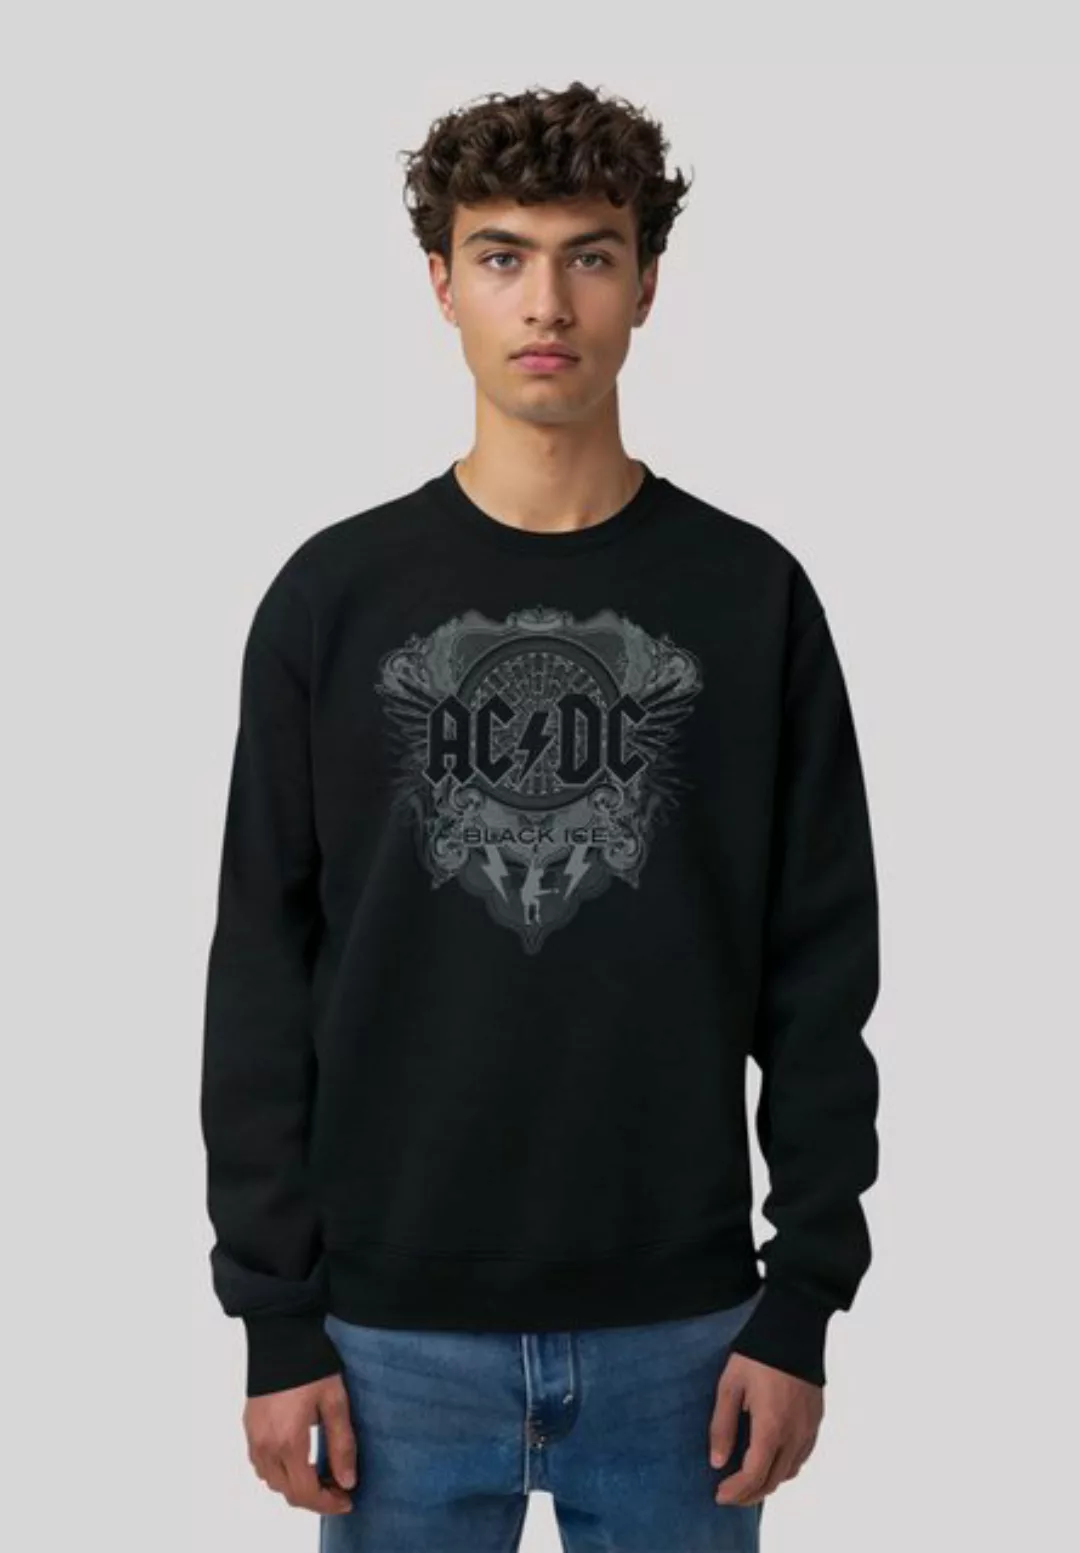 F4NT4STIC Sweatshirt AC/DC Rock Musik Band Black Ice Premium Qualität günstig online kaufen